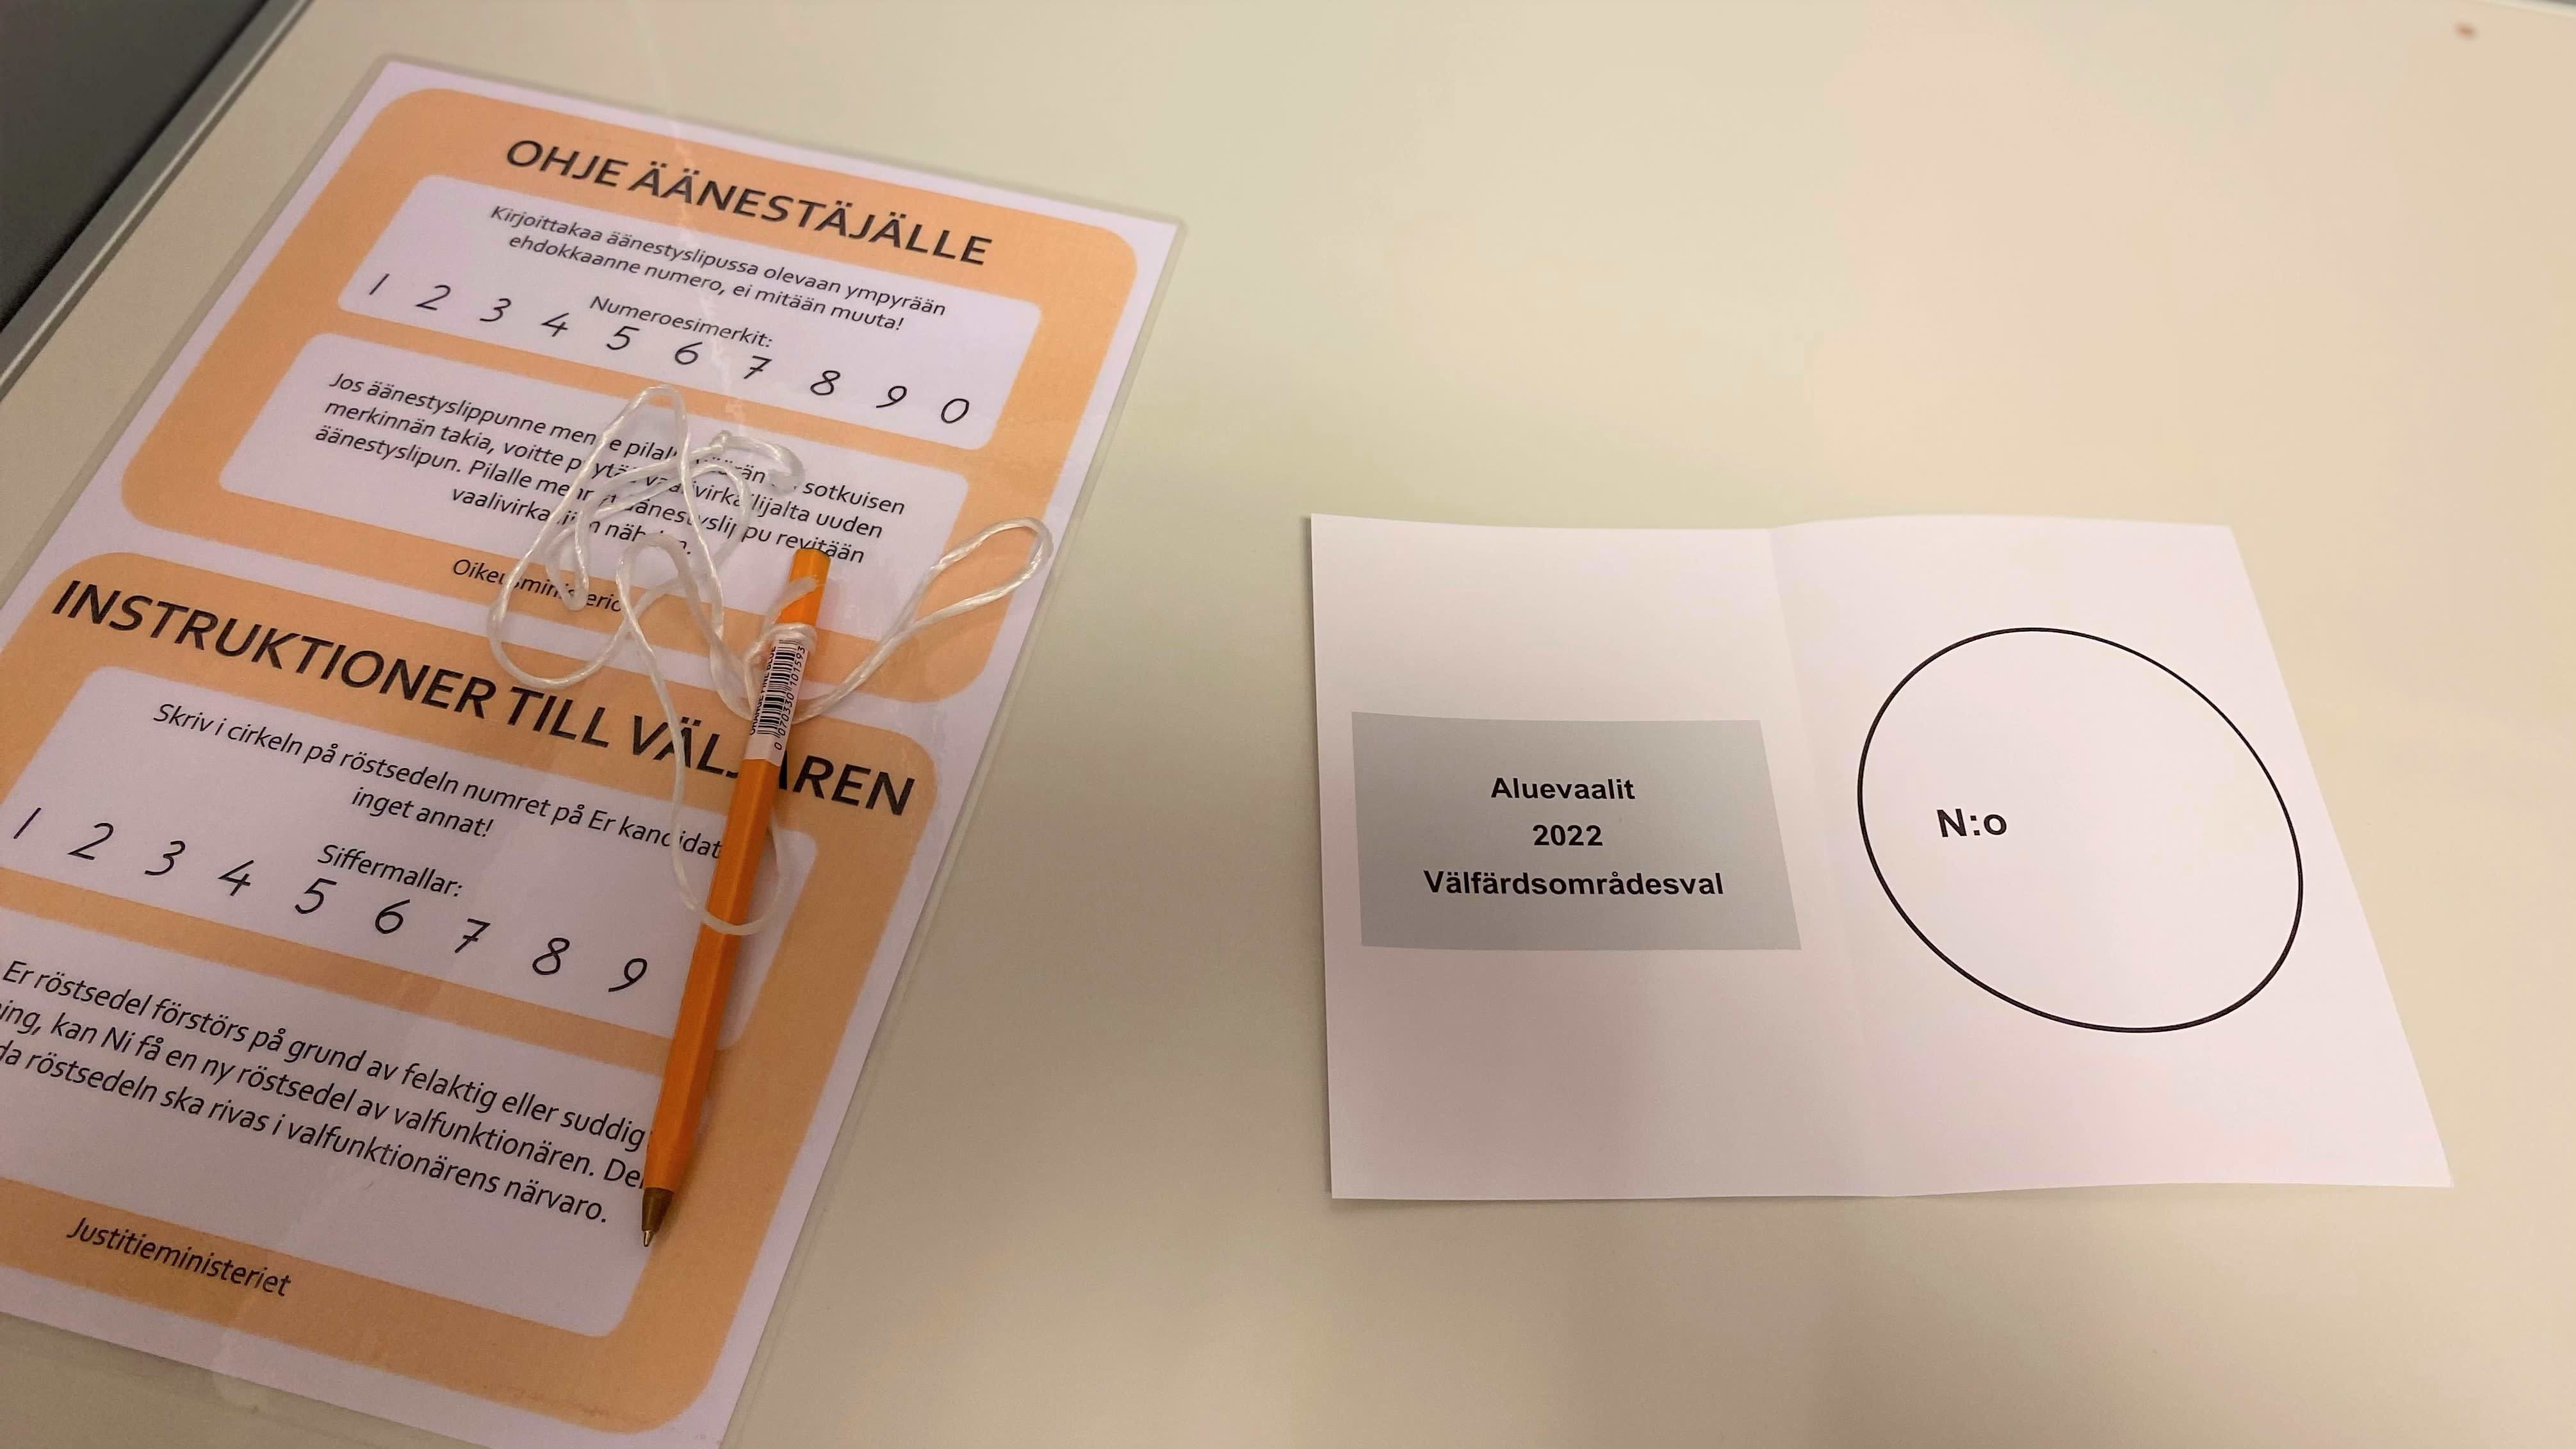 Aluevaalien 2022 äänestyslippu (tyhjä) pöydällä, vieressä kynä ja ohjelappu. 